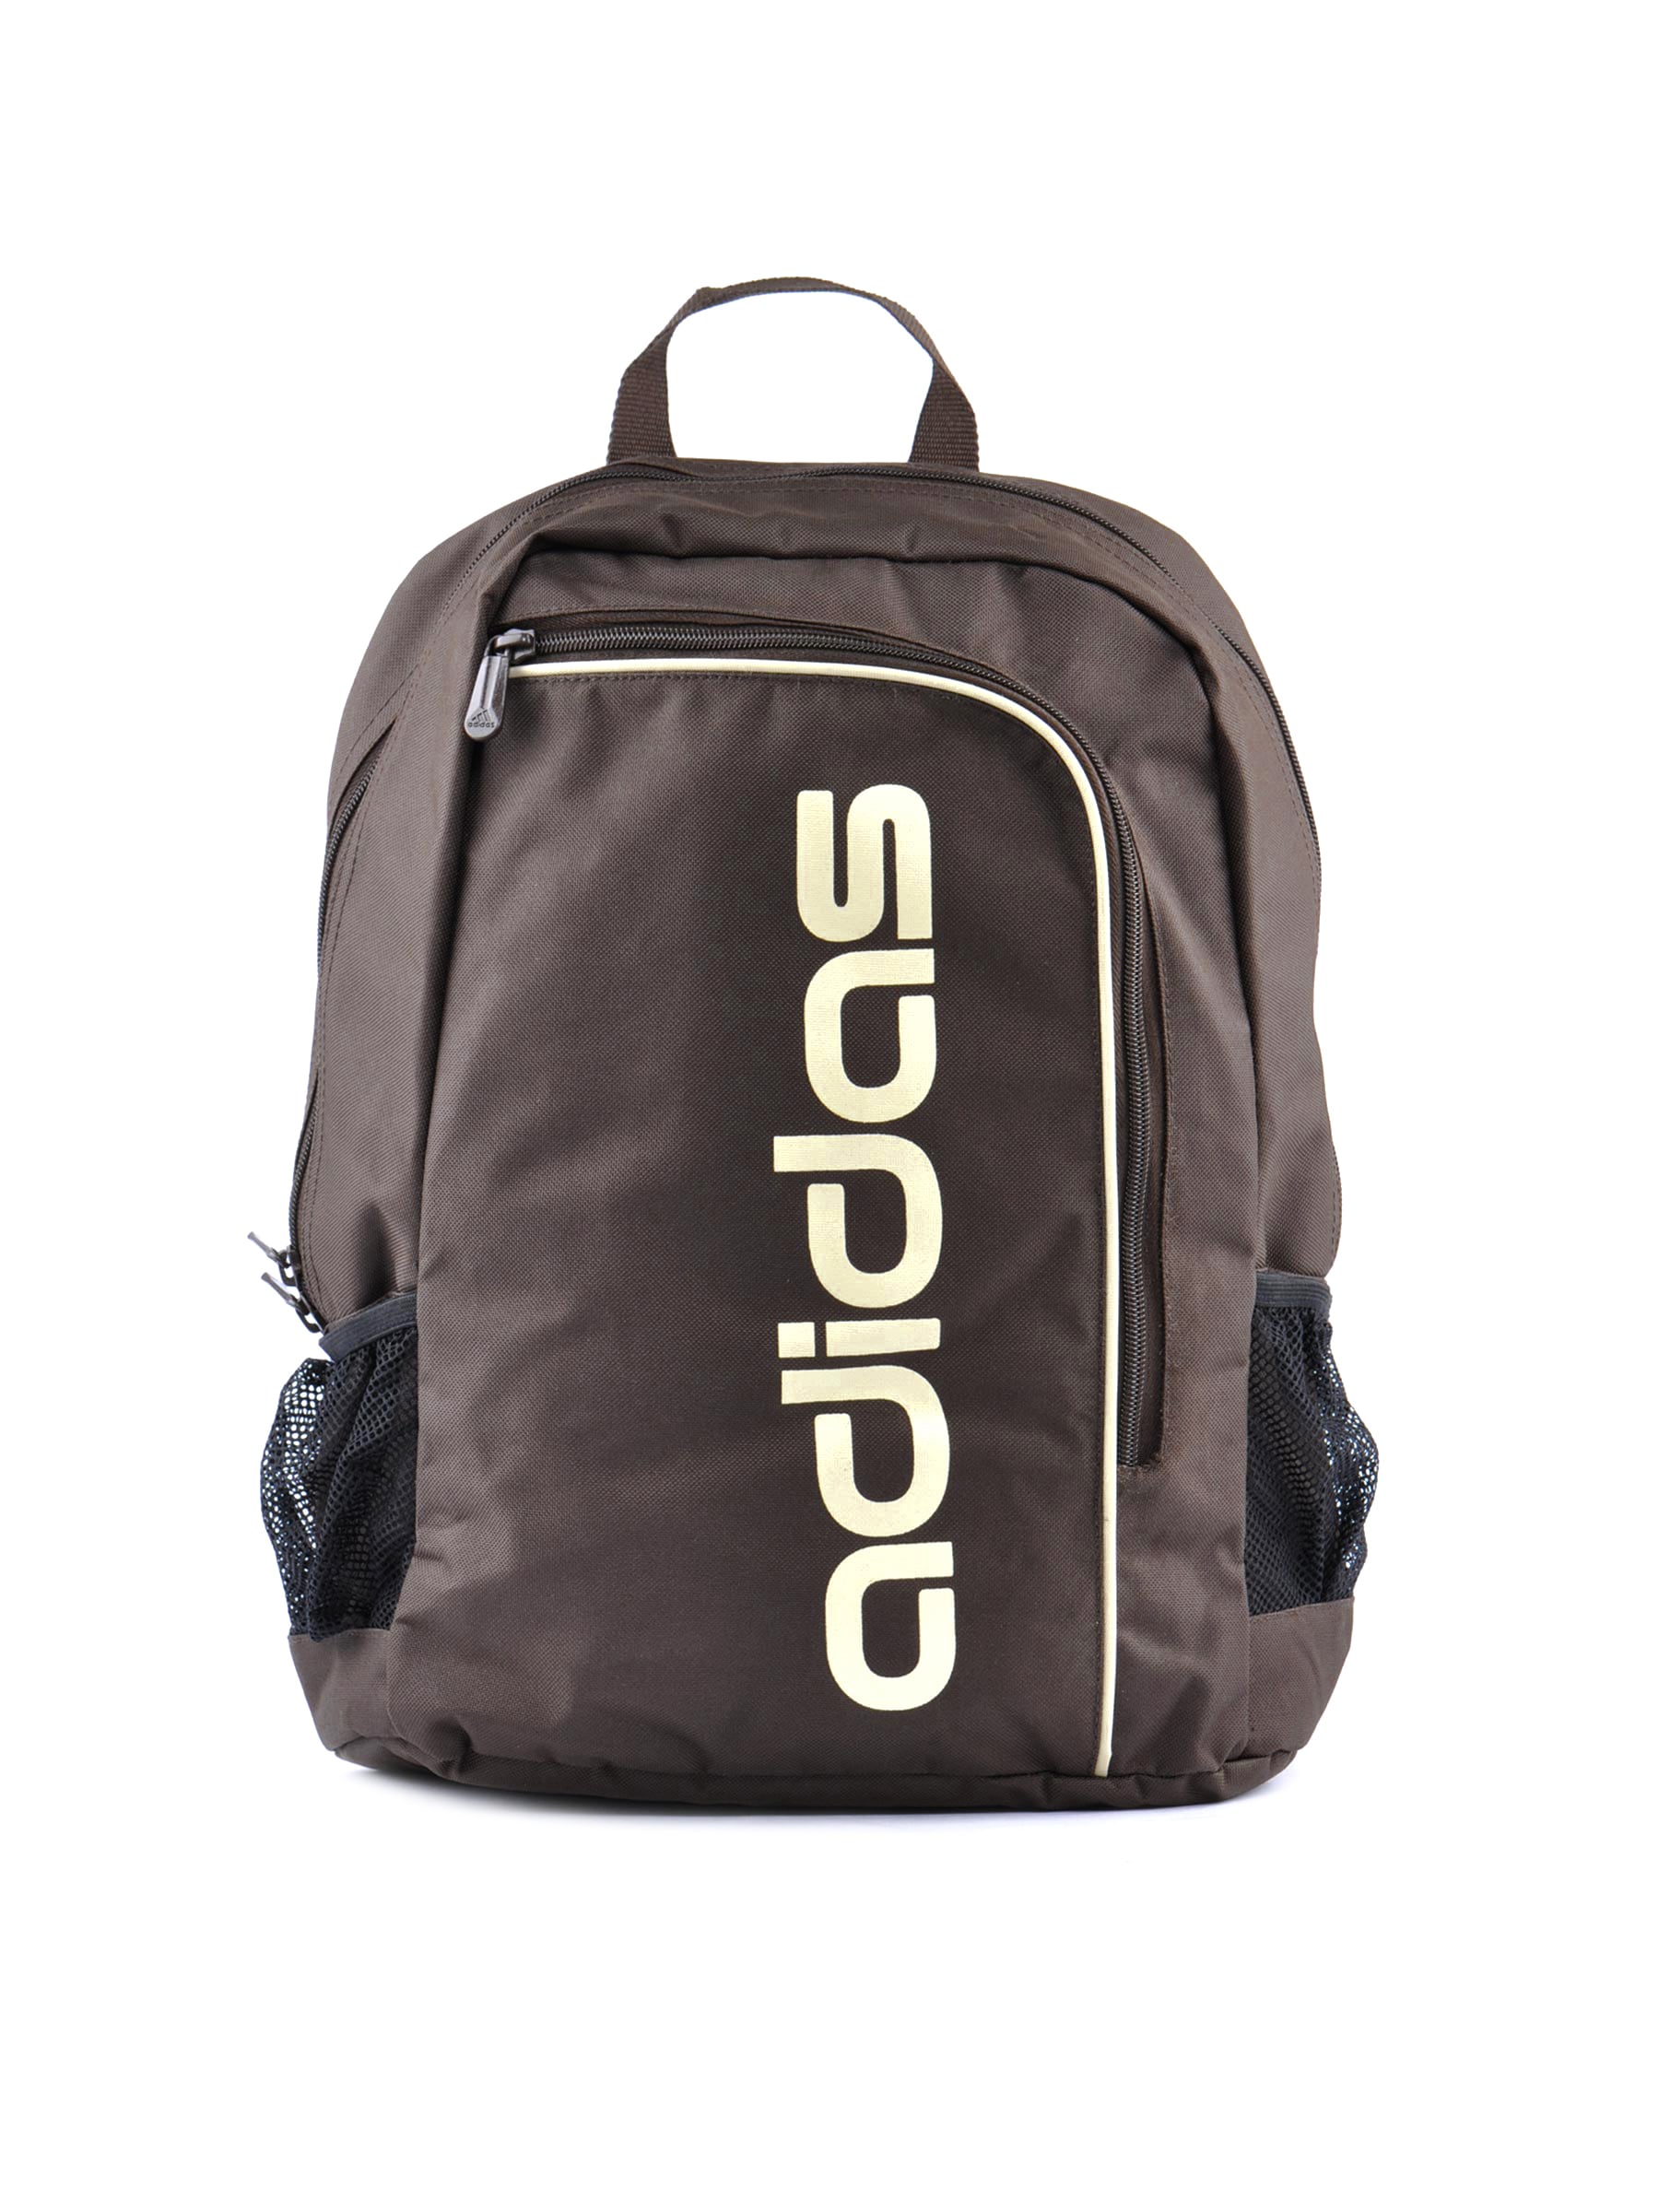 ADIDAS Unisex ADP1810 Brown Backpack